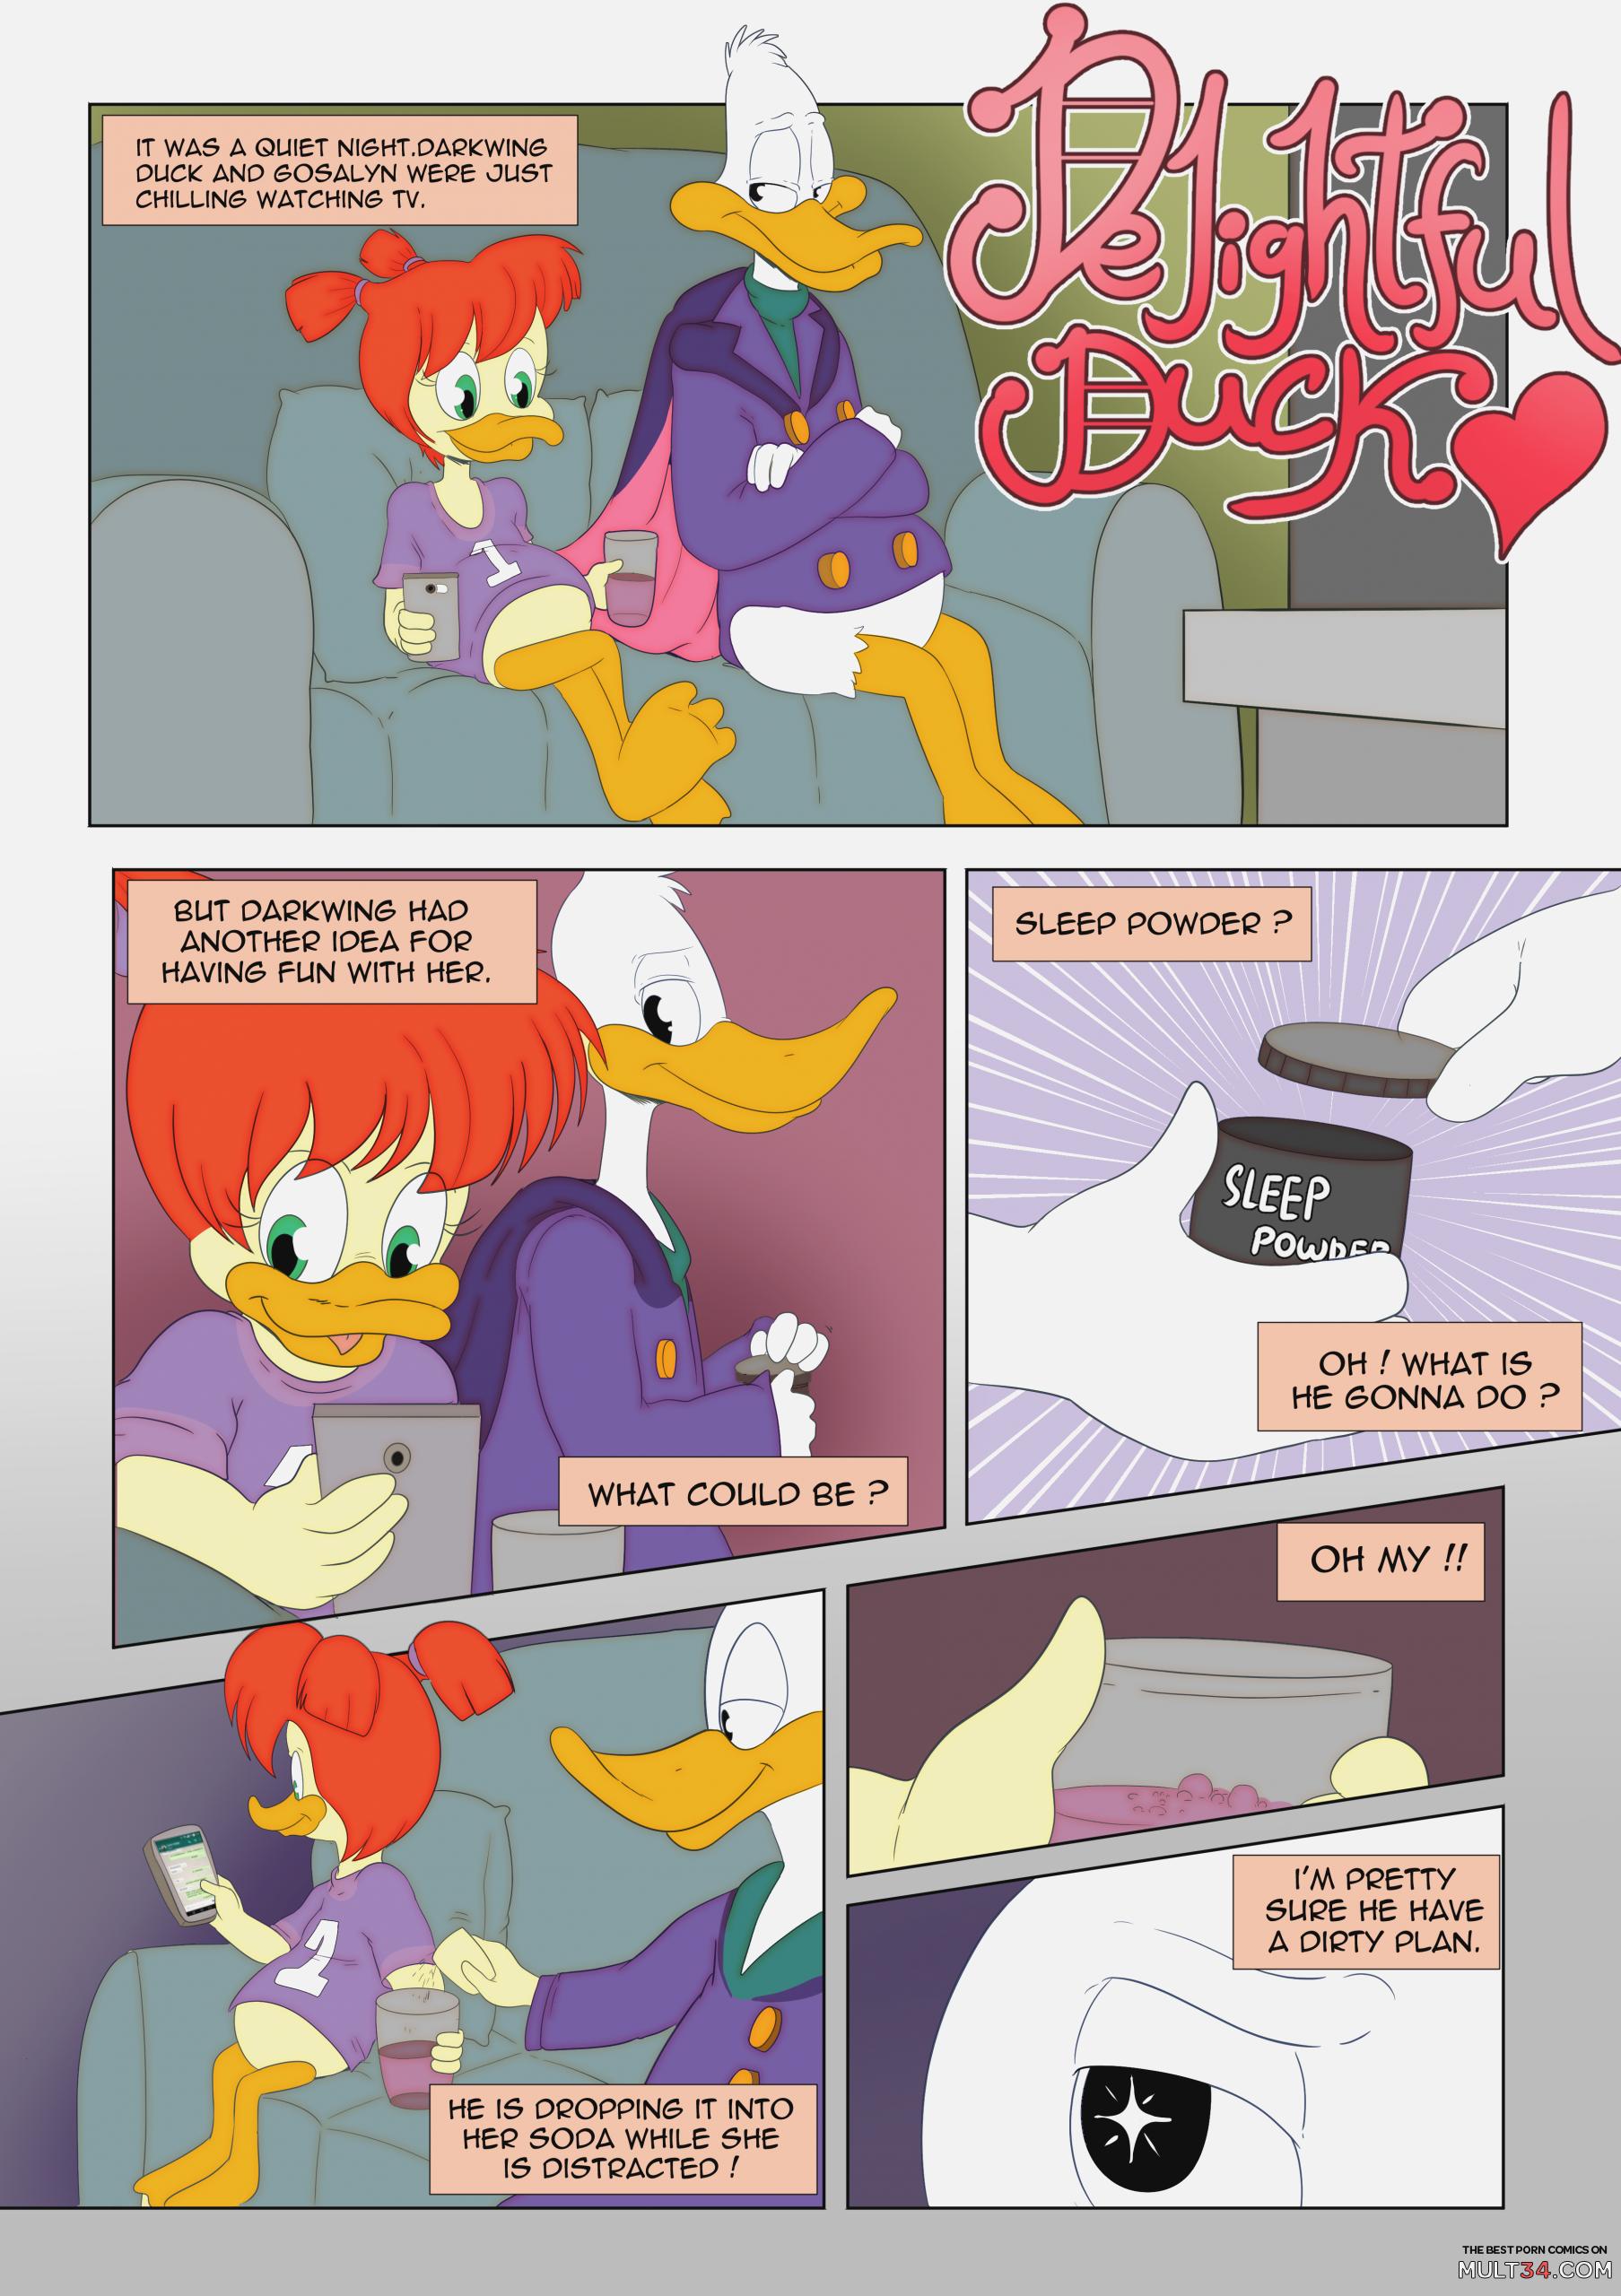 Delightful Duck porn comic - the best cartoon porn comics, Rule 34 | MULT34